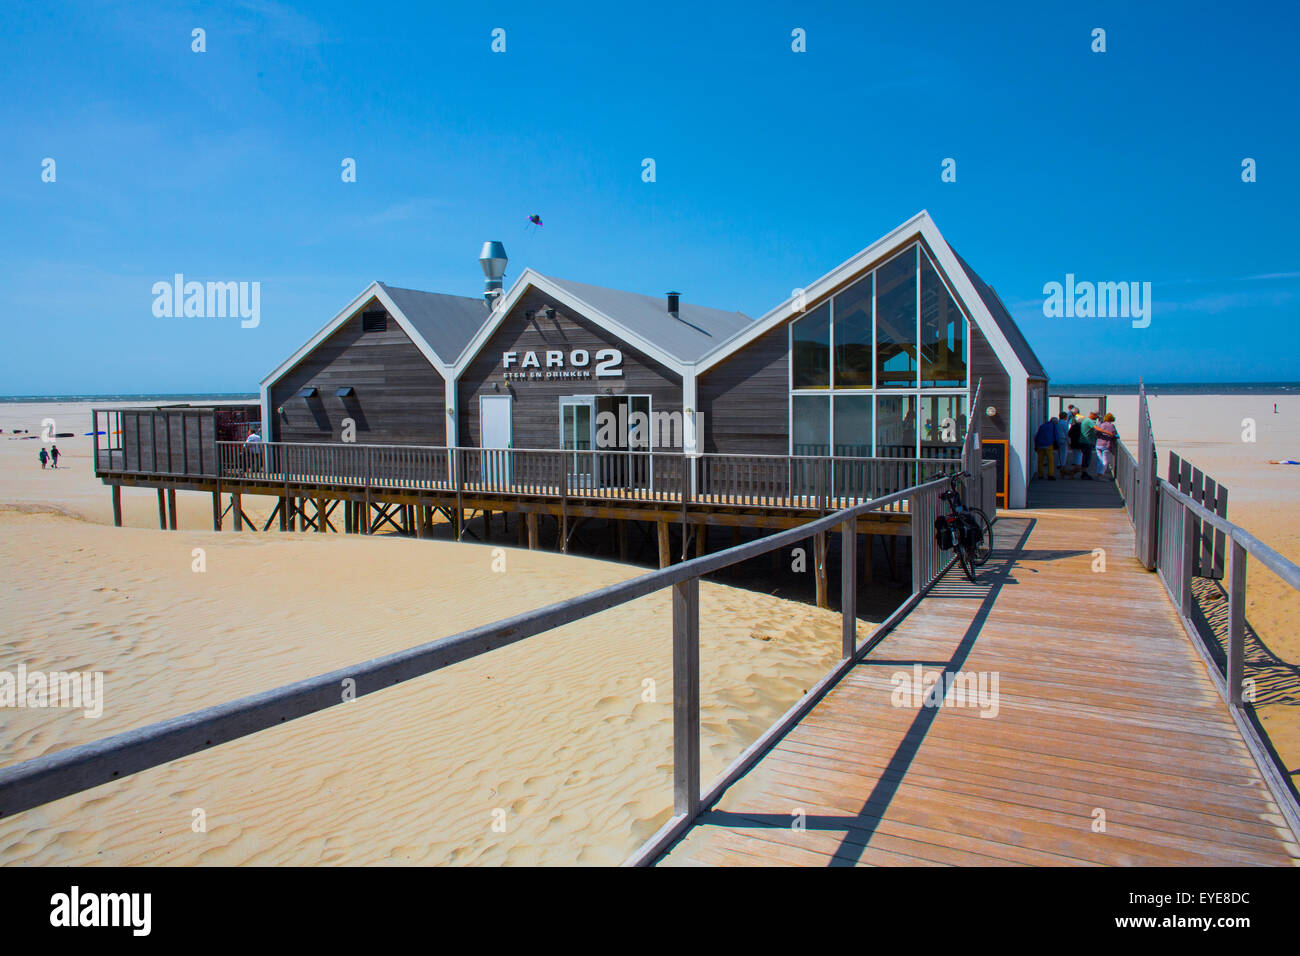 Restaurant sur la plage de l'île de télex, les Pays-Bas Banque D'Images